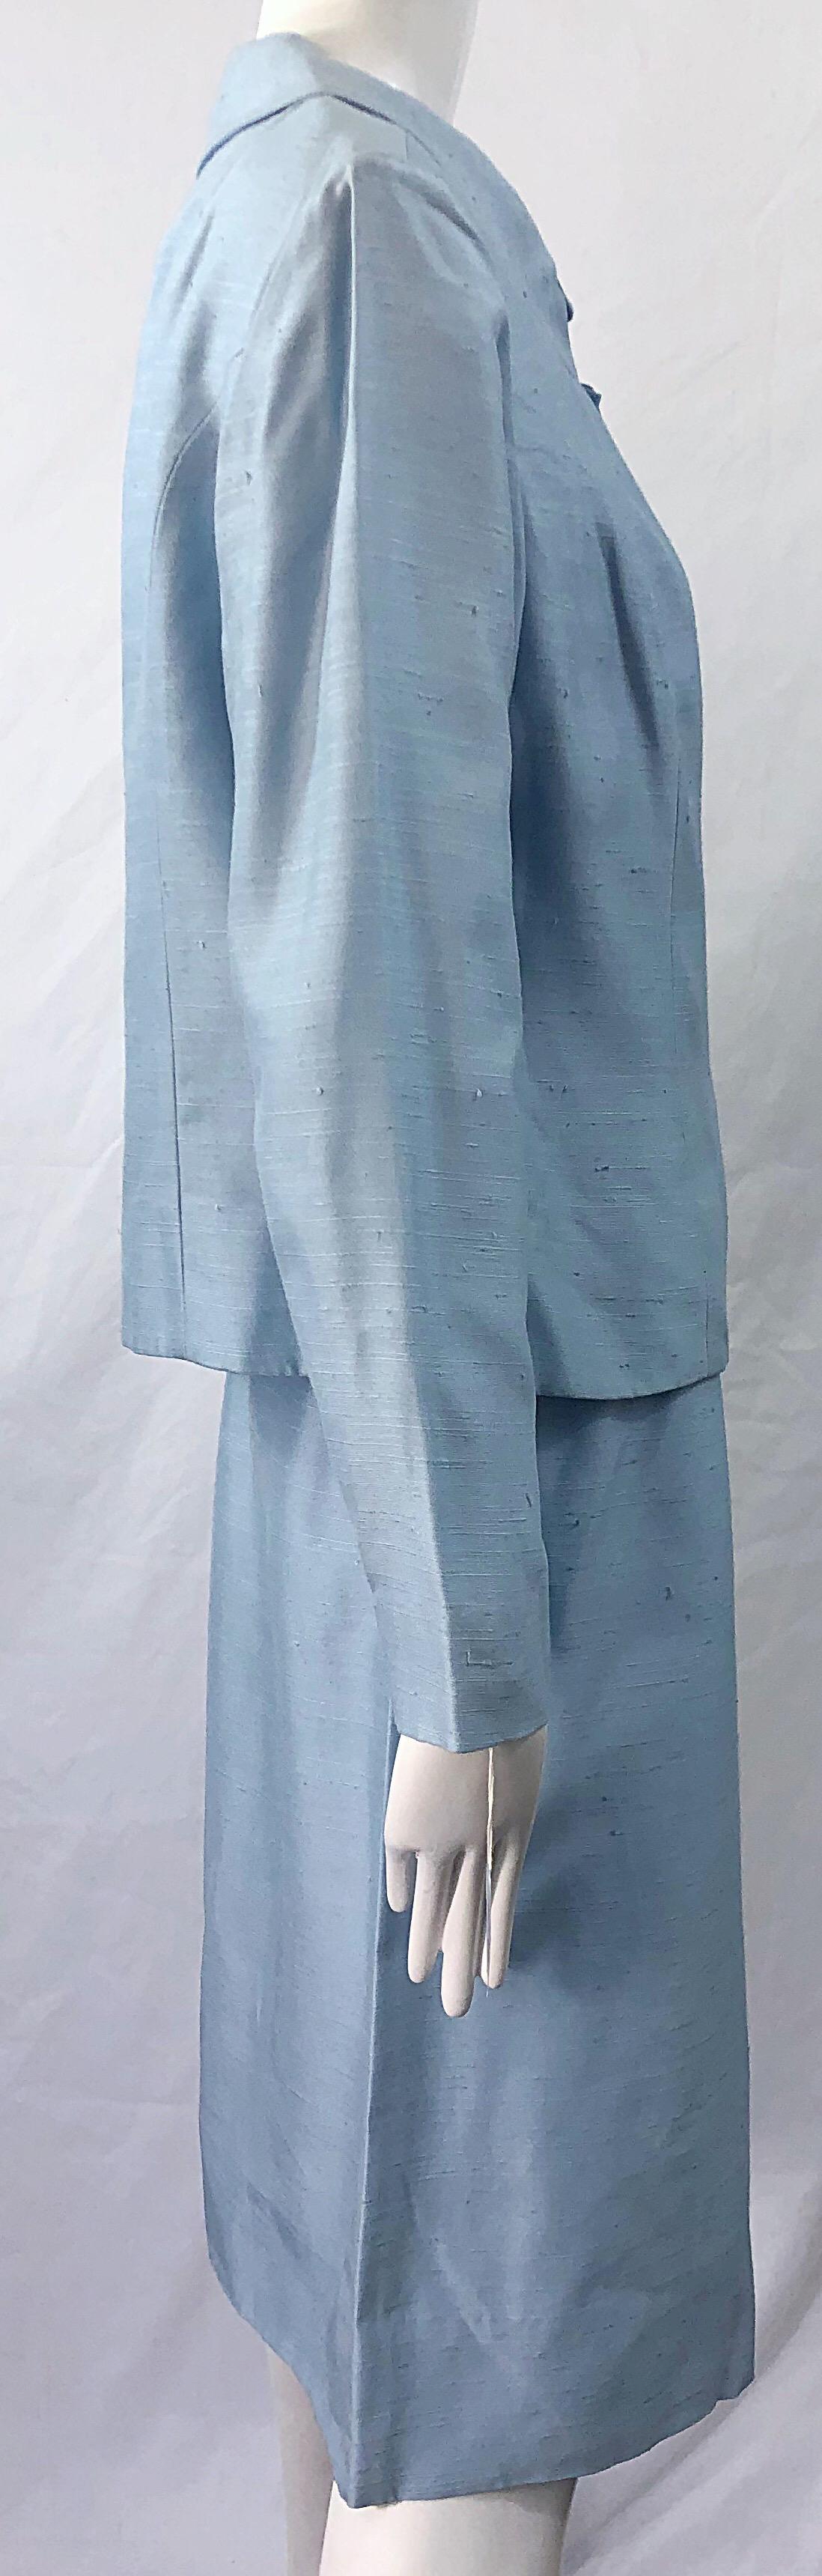 Deadstock 1960s Alvin Handmacher Light Blue Rhinestone Vintage 60s Skirt Suit For Sale 4